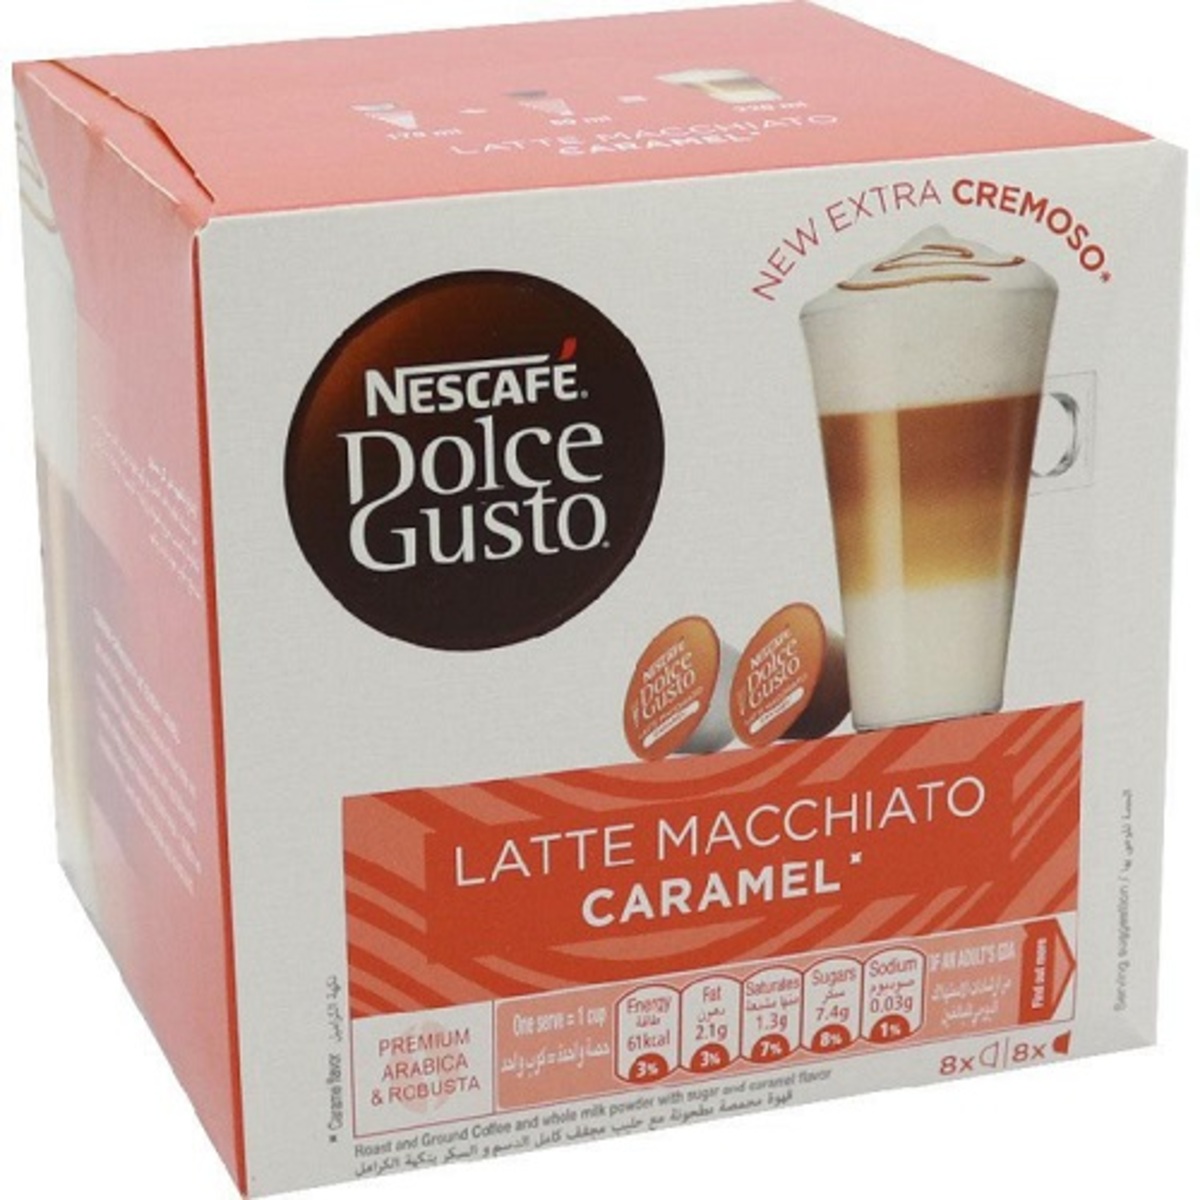 Nescafe Dolce Gusto Caramel Latte Macchiato 16 Capsules